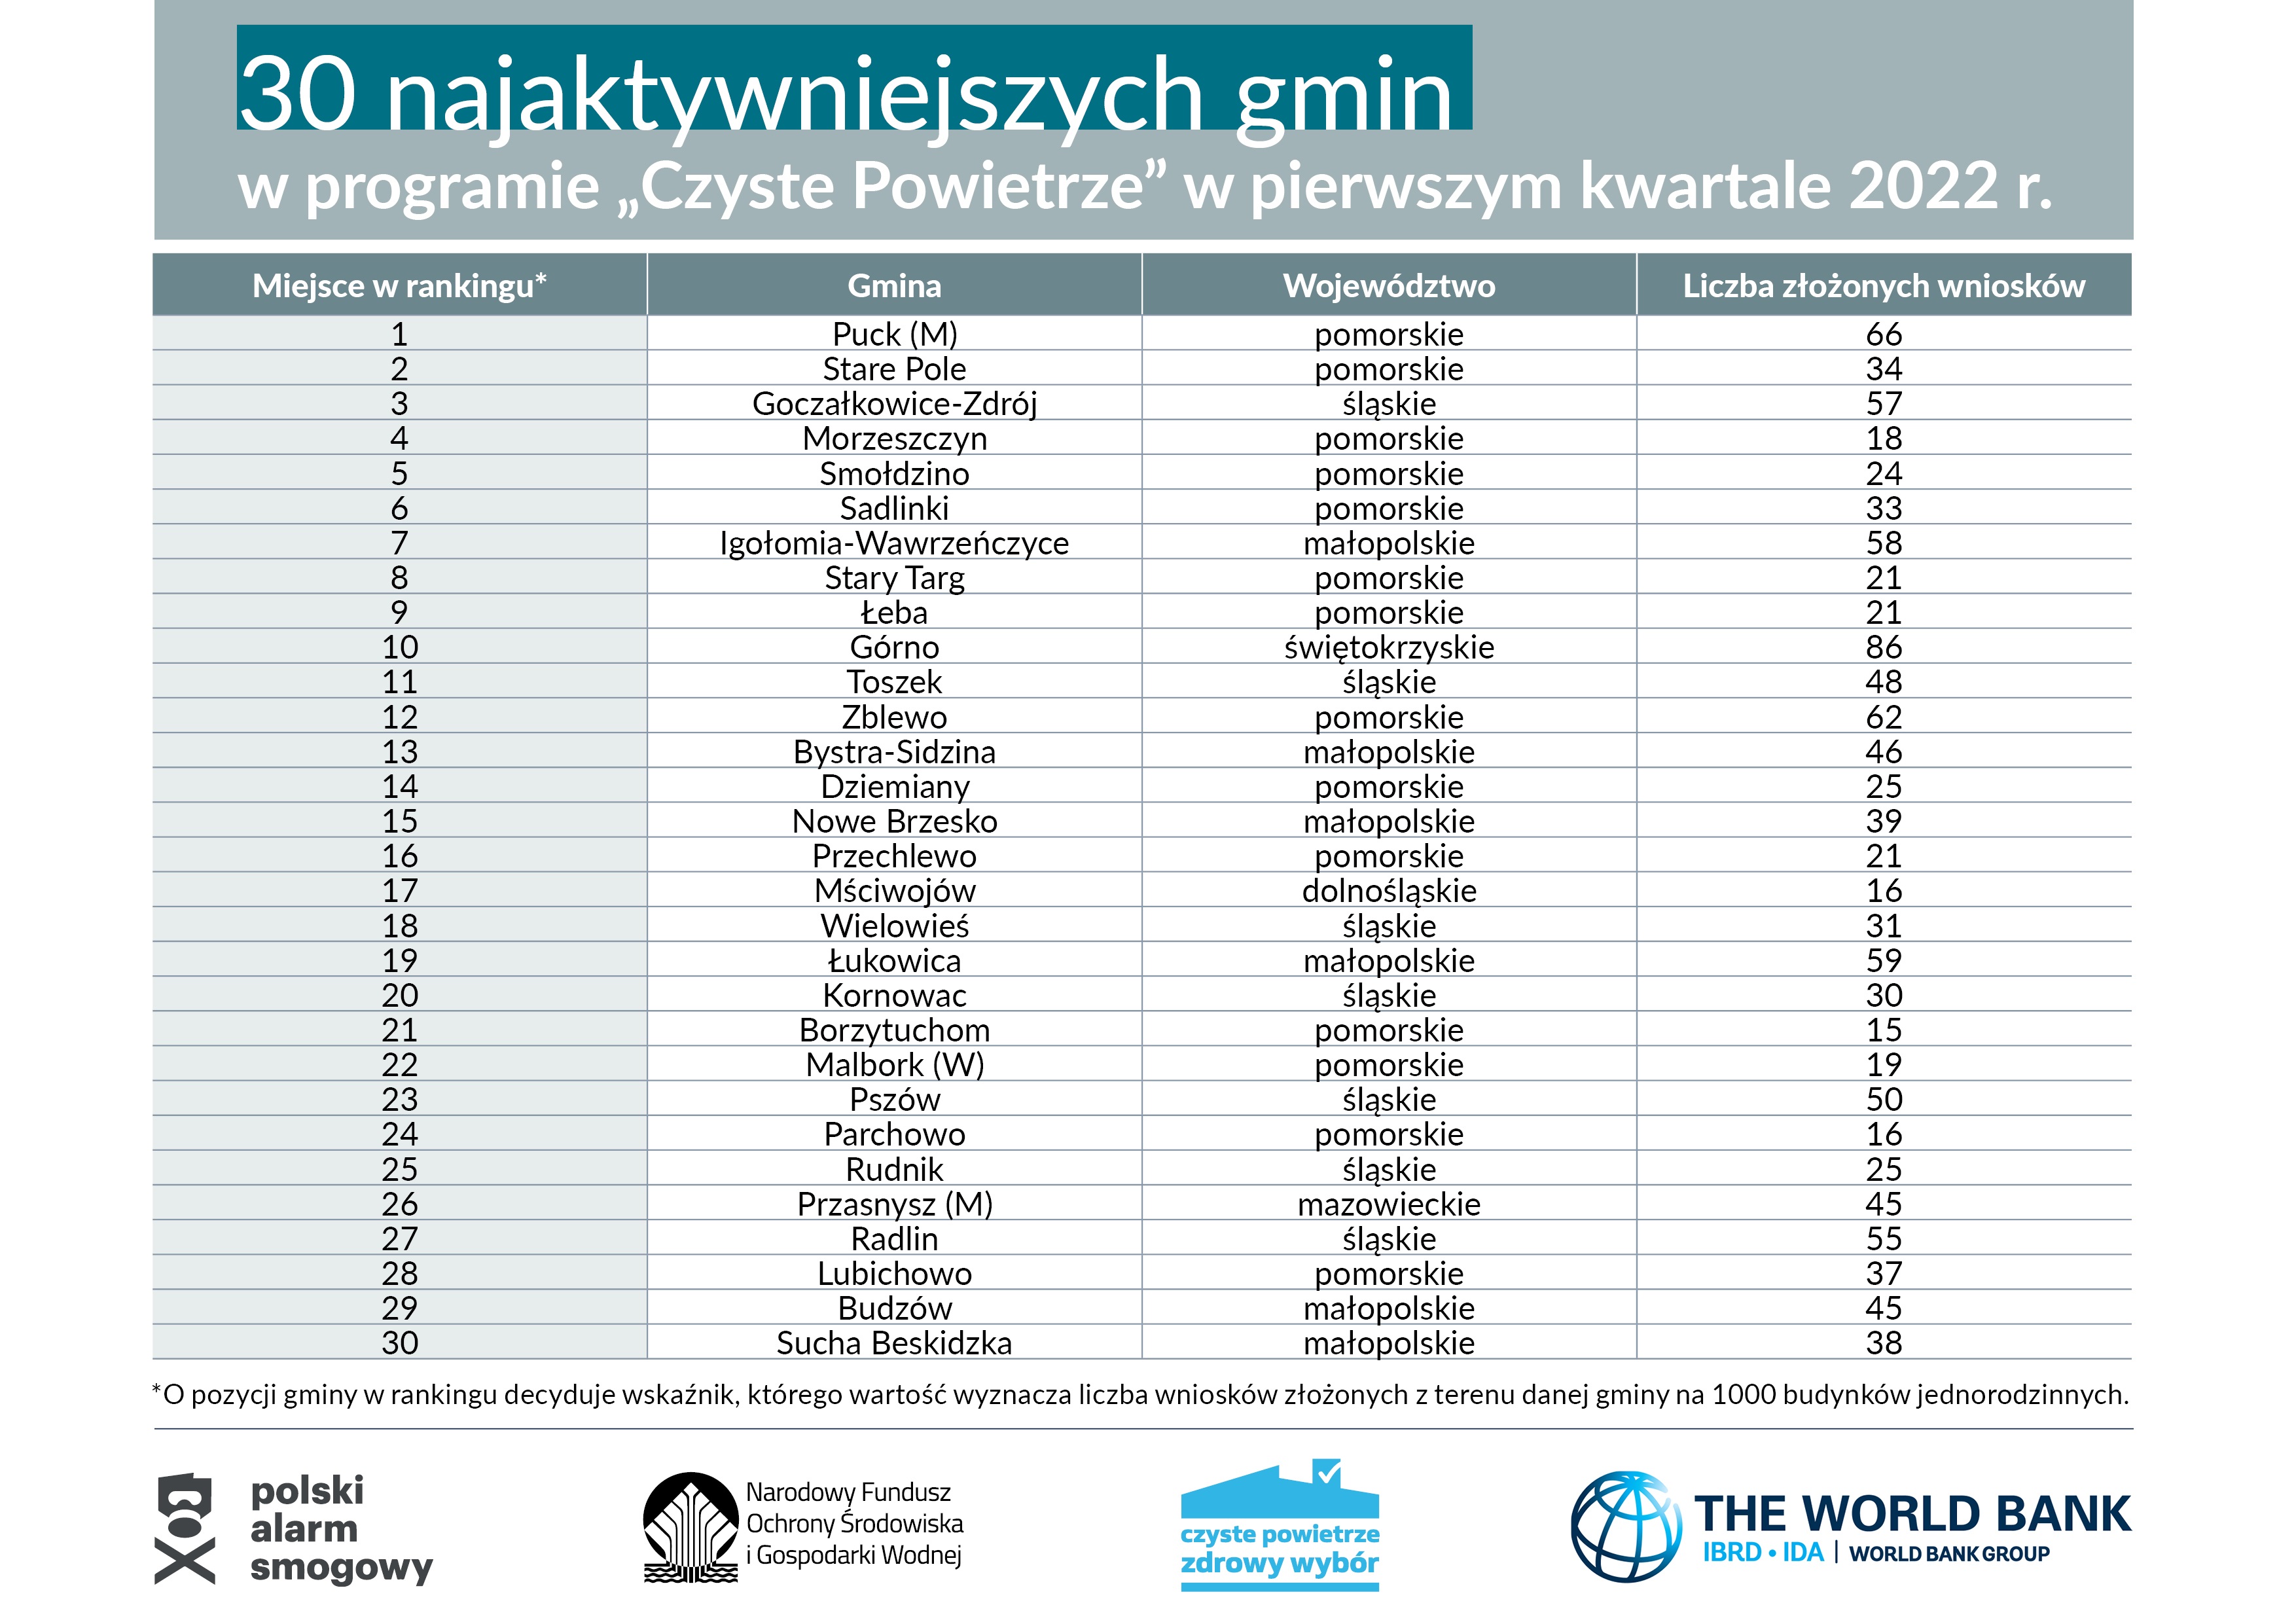 Czołowa trzydziestka gmin rankingu za I kwartał 2022 r. w programie Czyste Powietrze (Fot. NFOŚiGW)